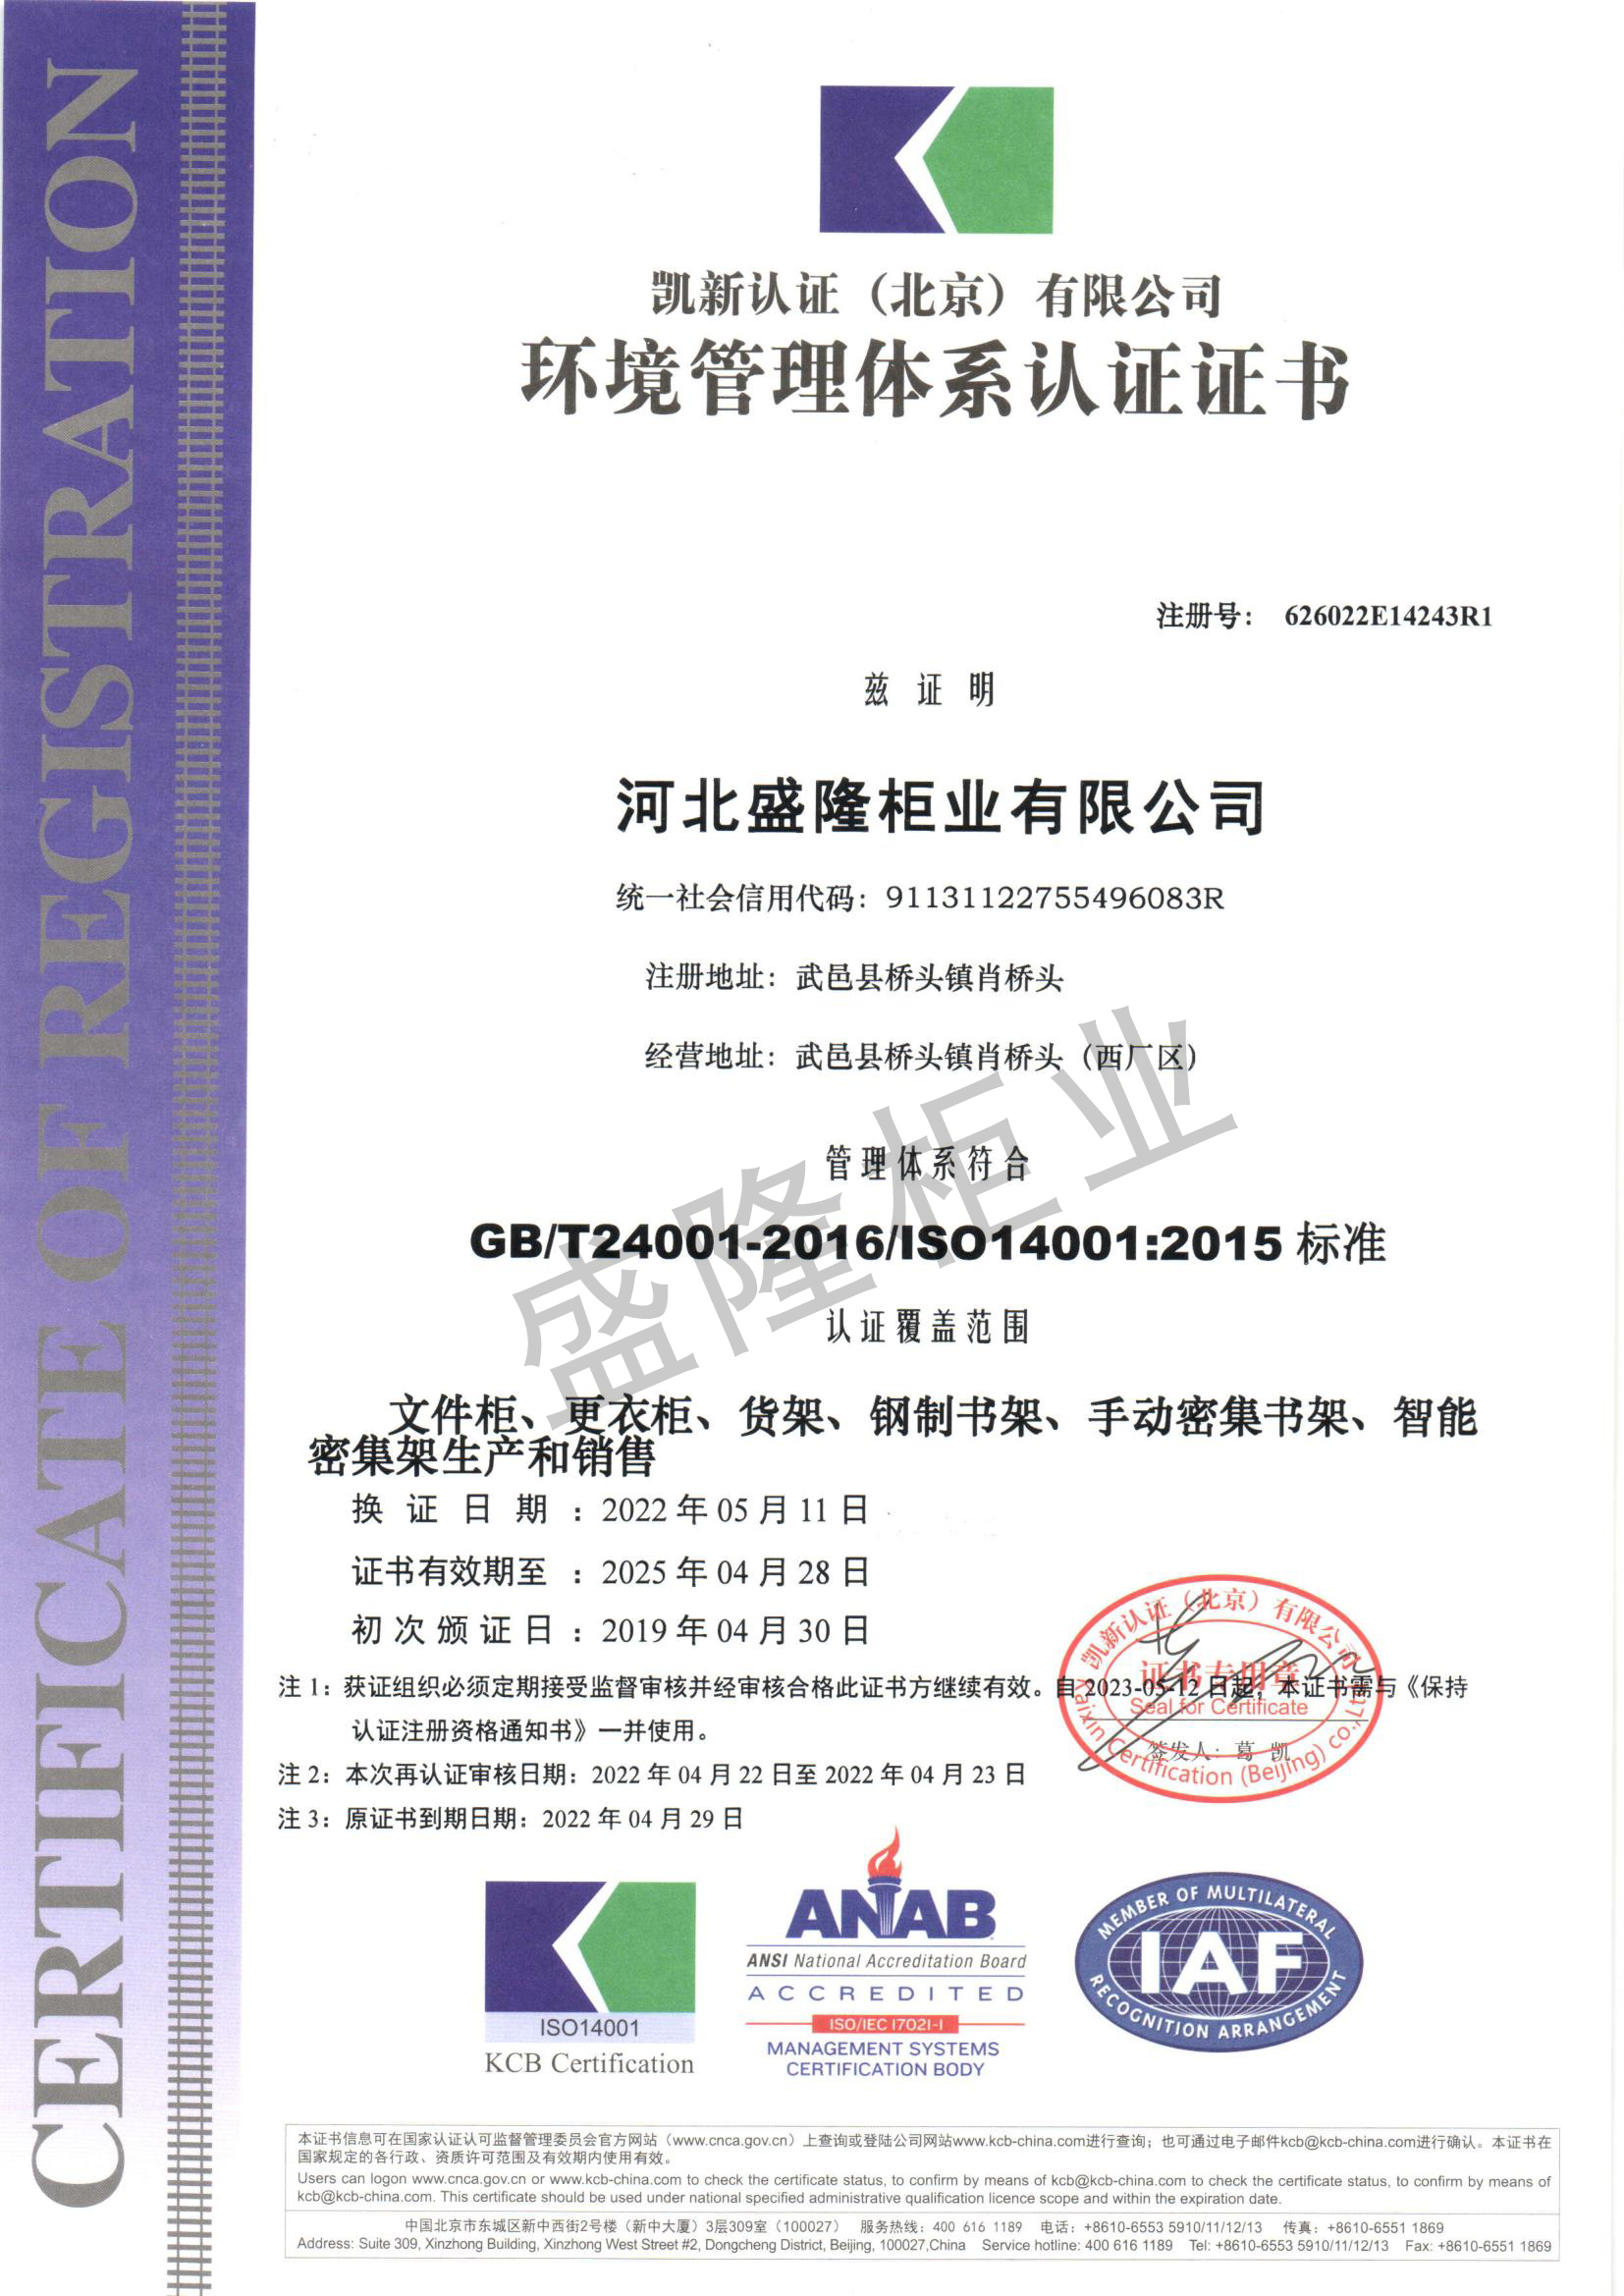 蛟河GB/T24001-2016/ISO14001:2015